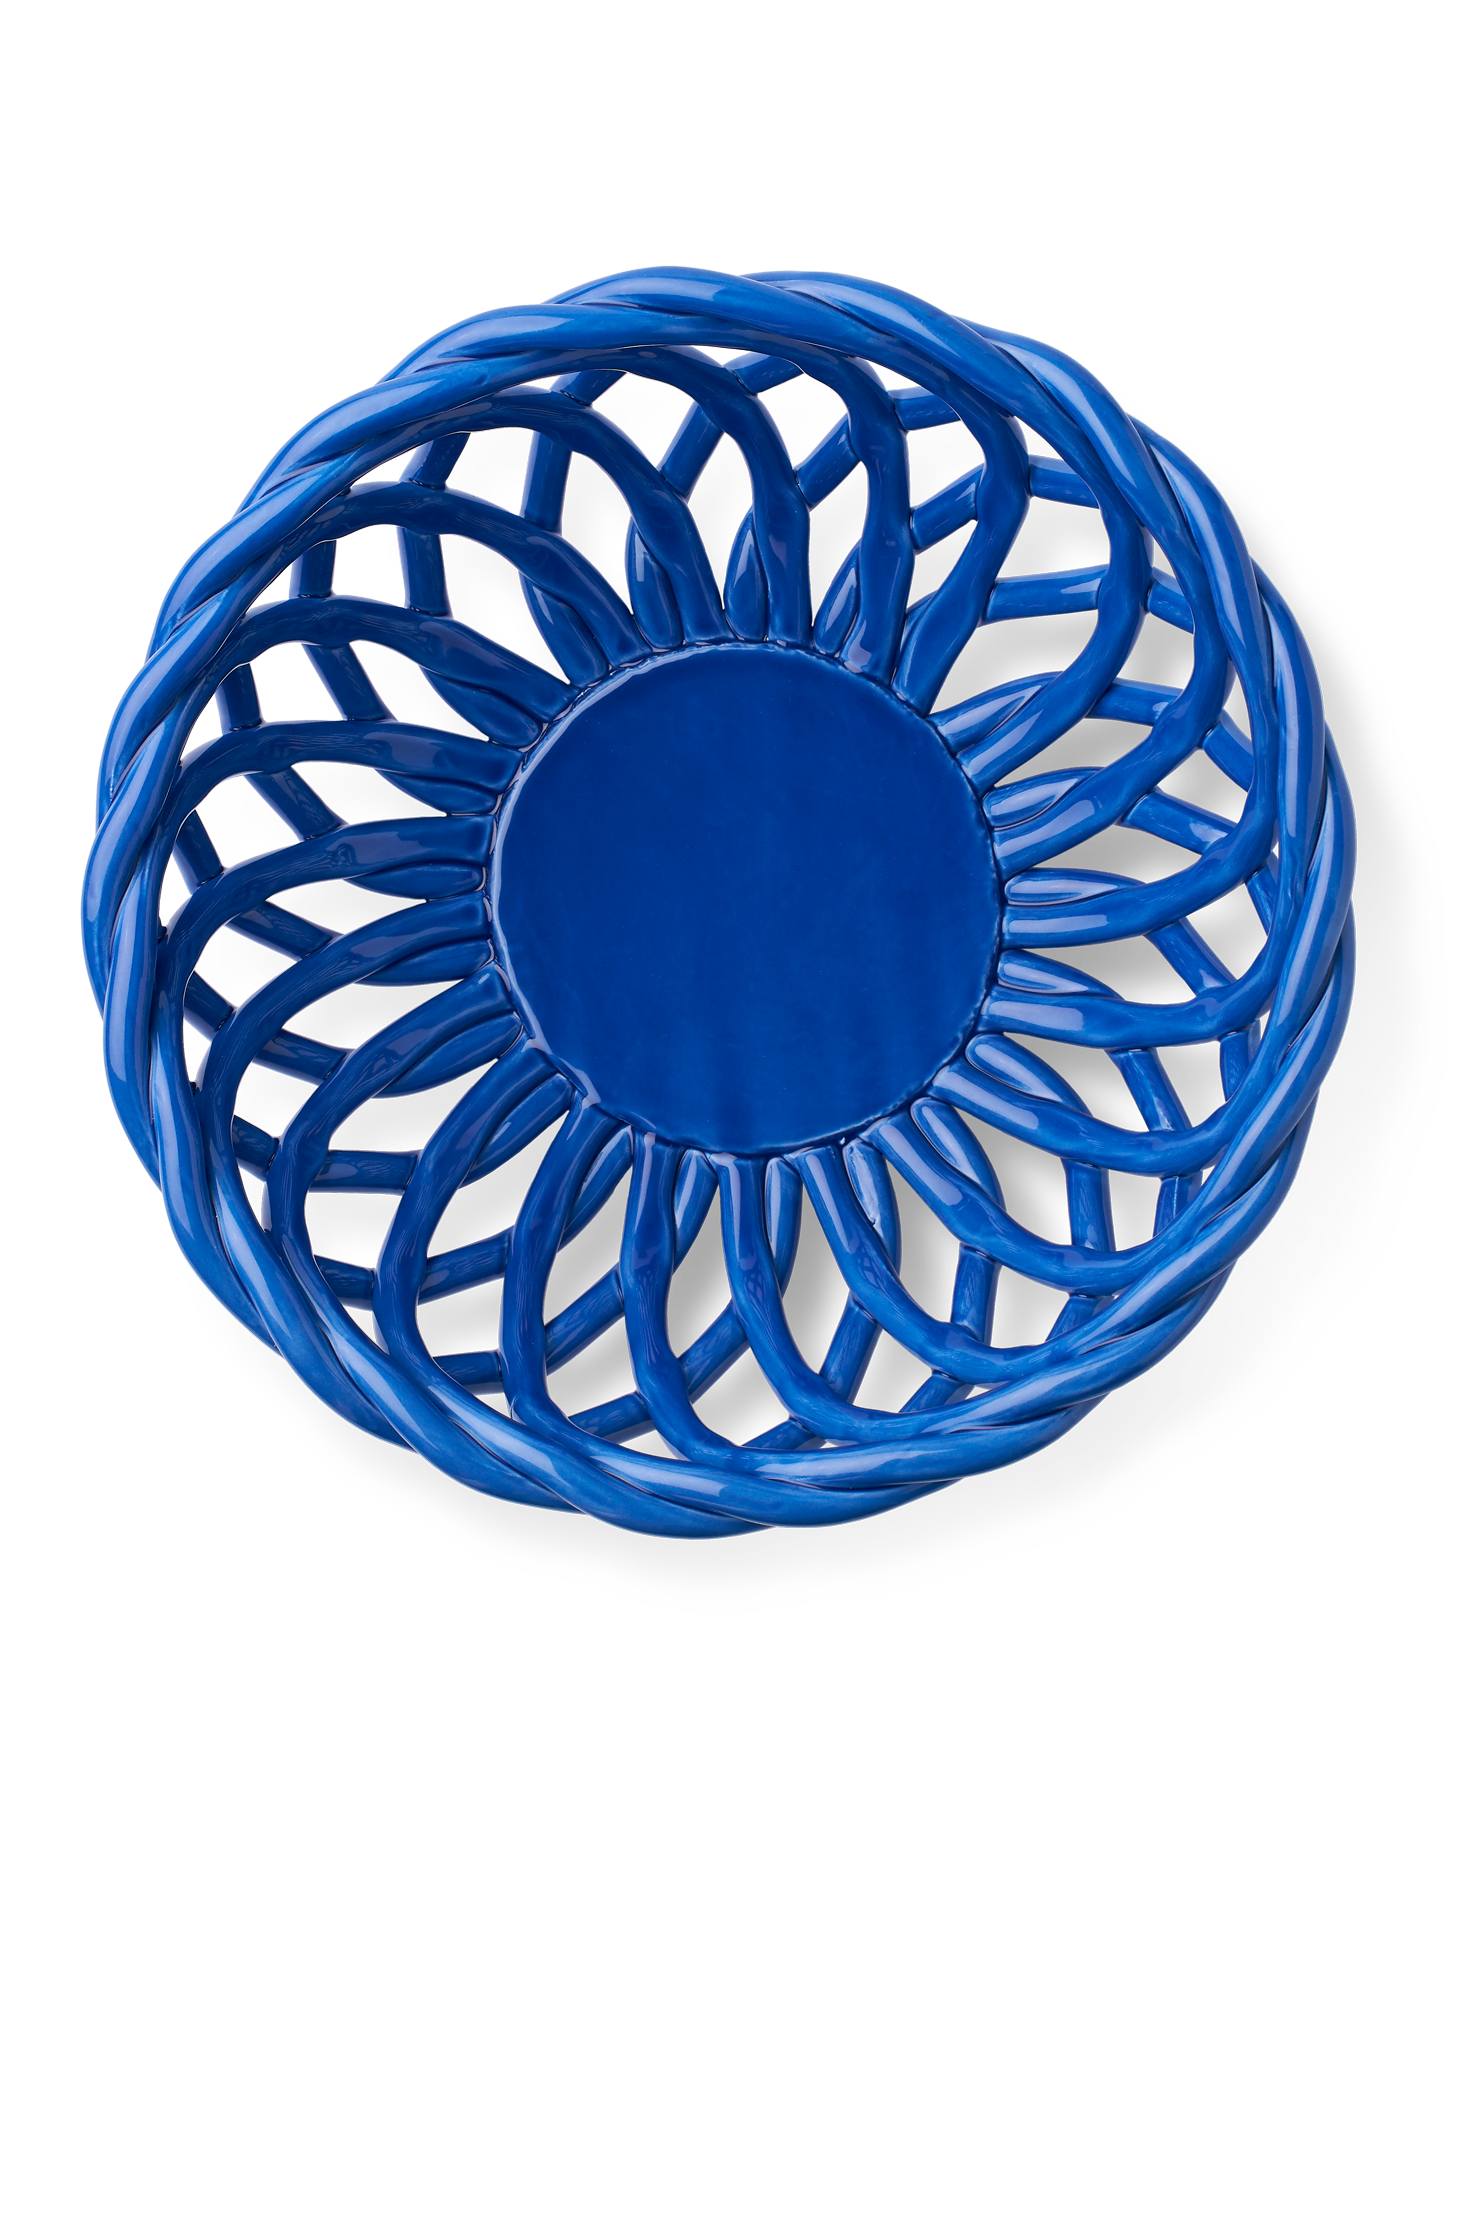 Large Sicily Basket - Blue 